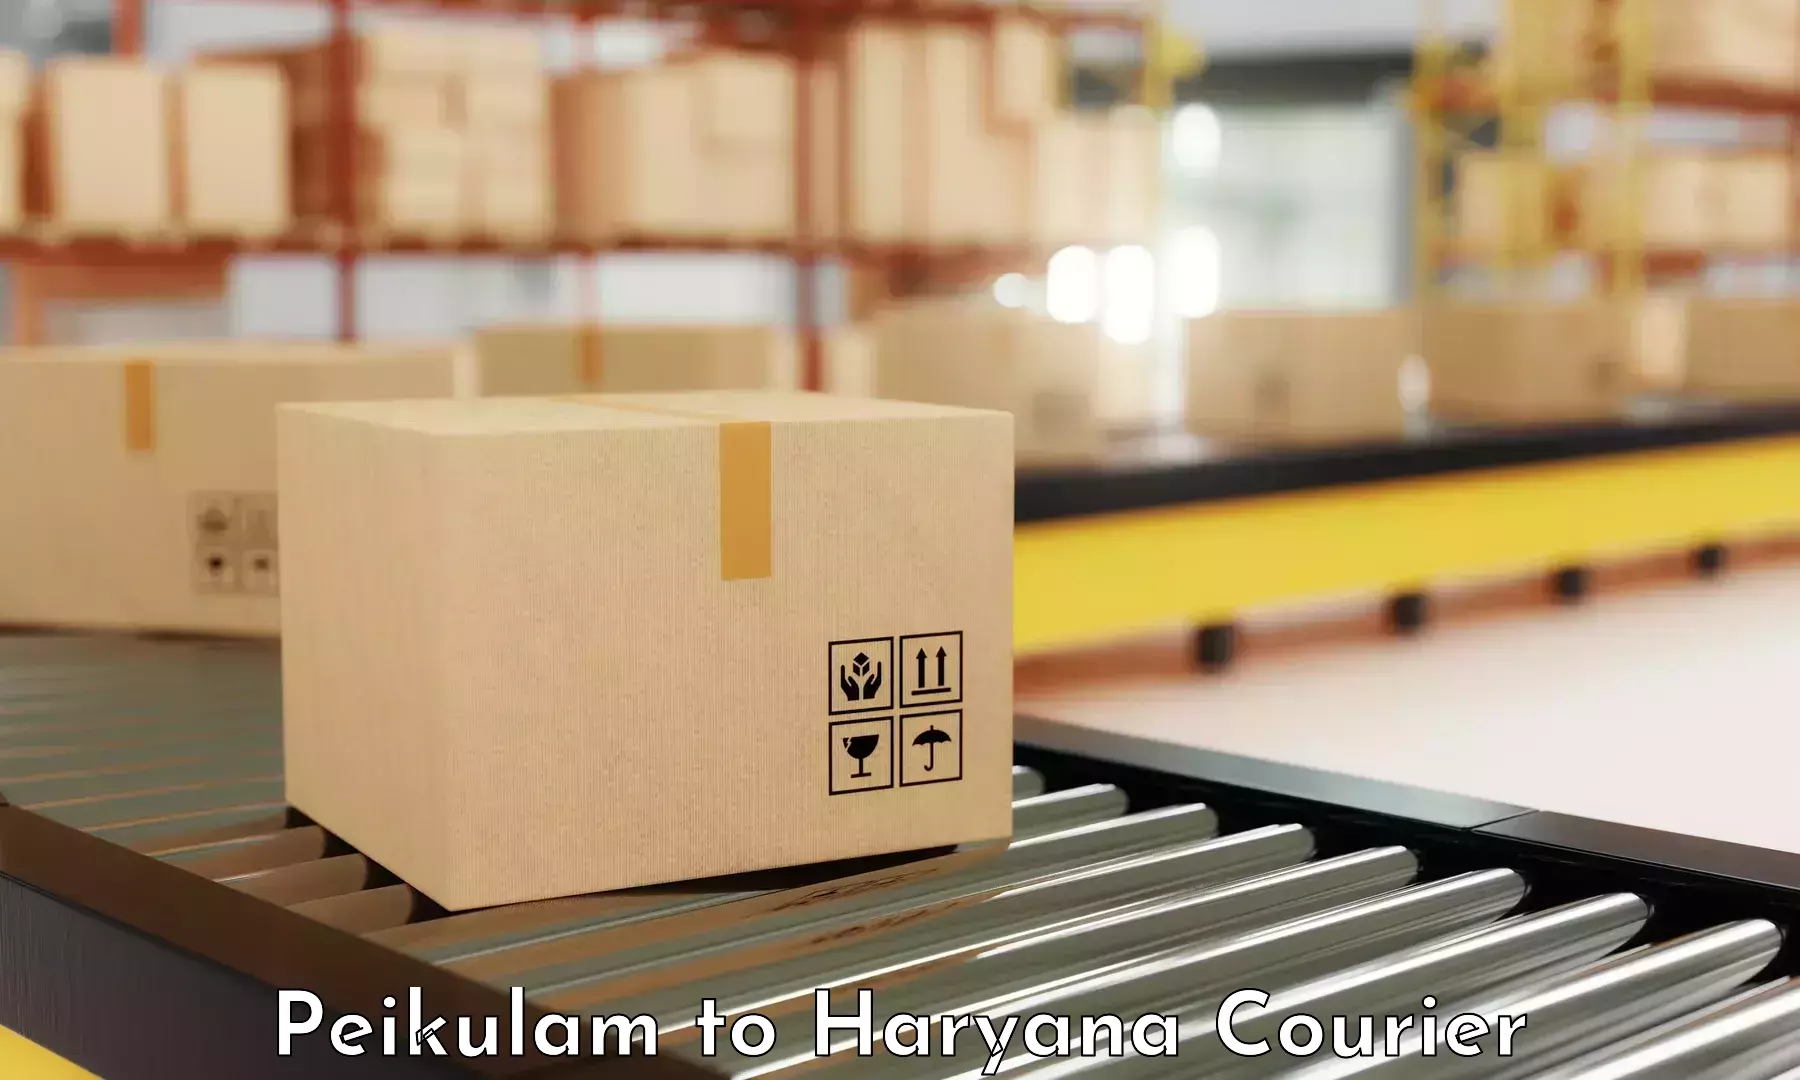 Urgent courier needs Peikulam to Kurukshetra